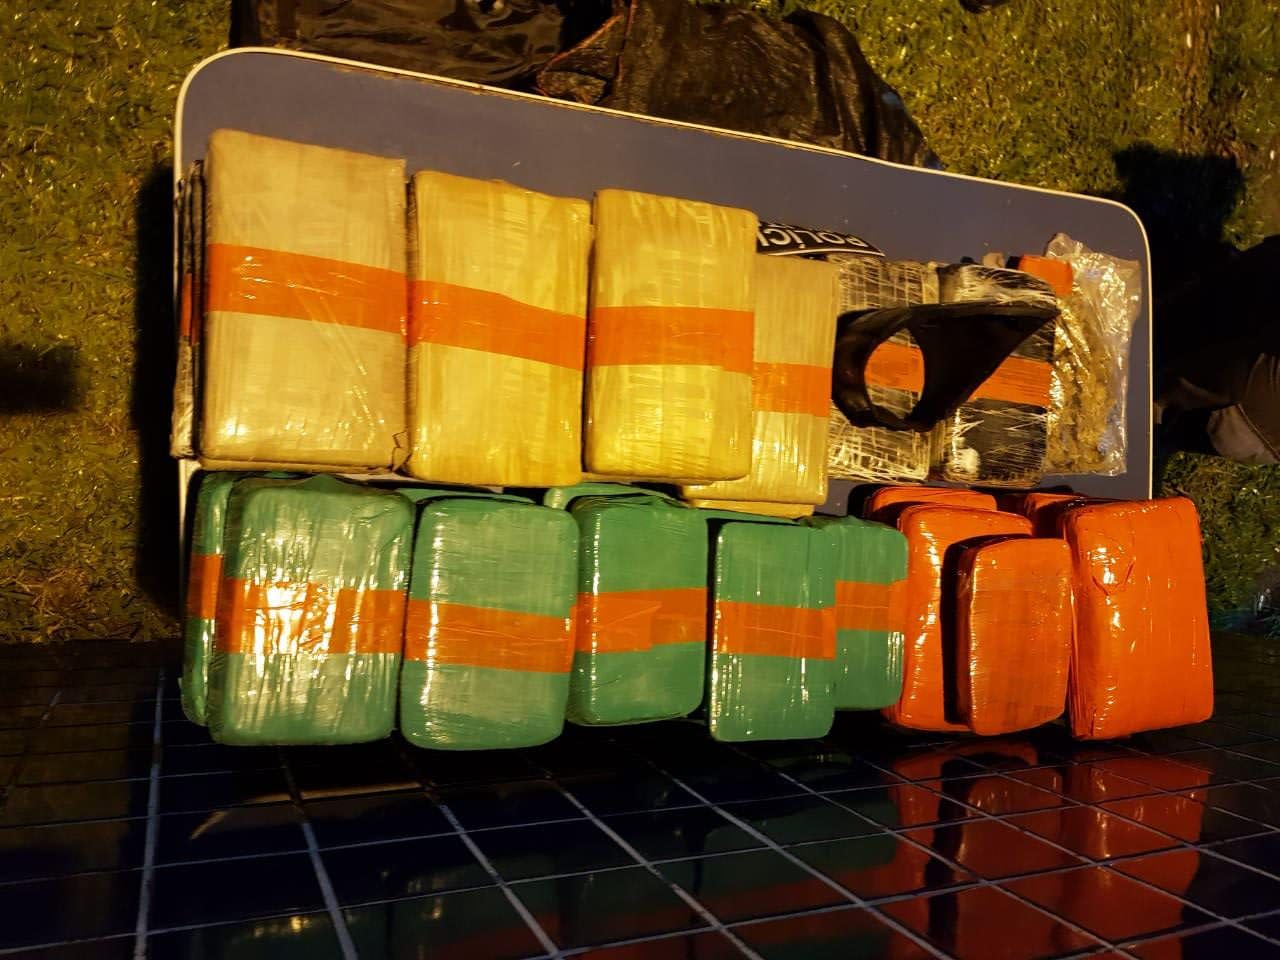 Polícia Federal apreende meia tonelada de cocaína durante operação